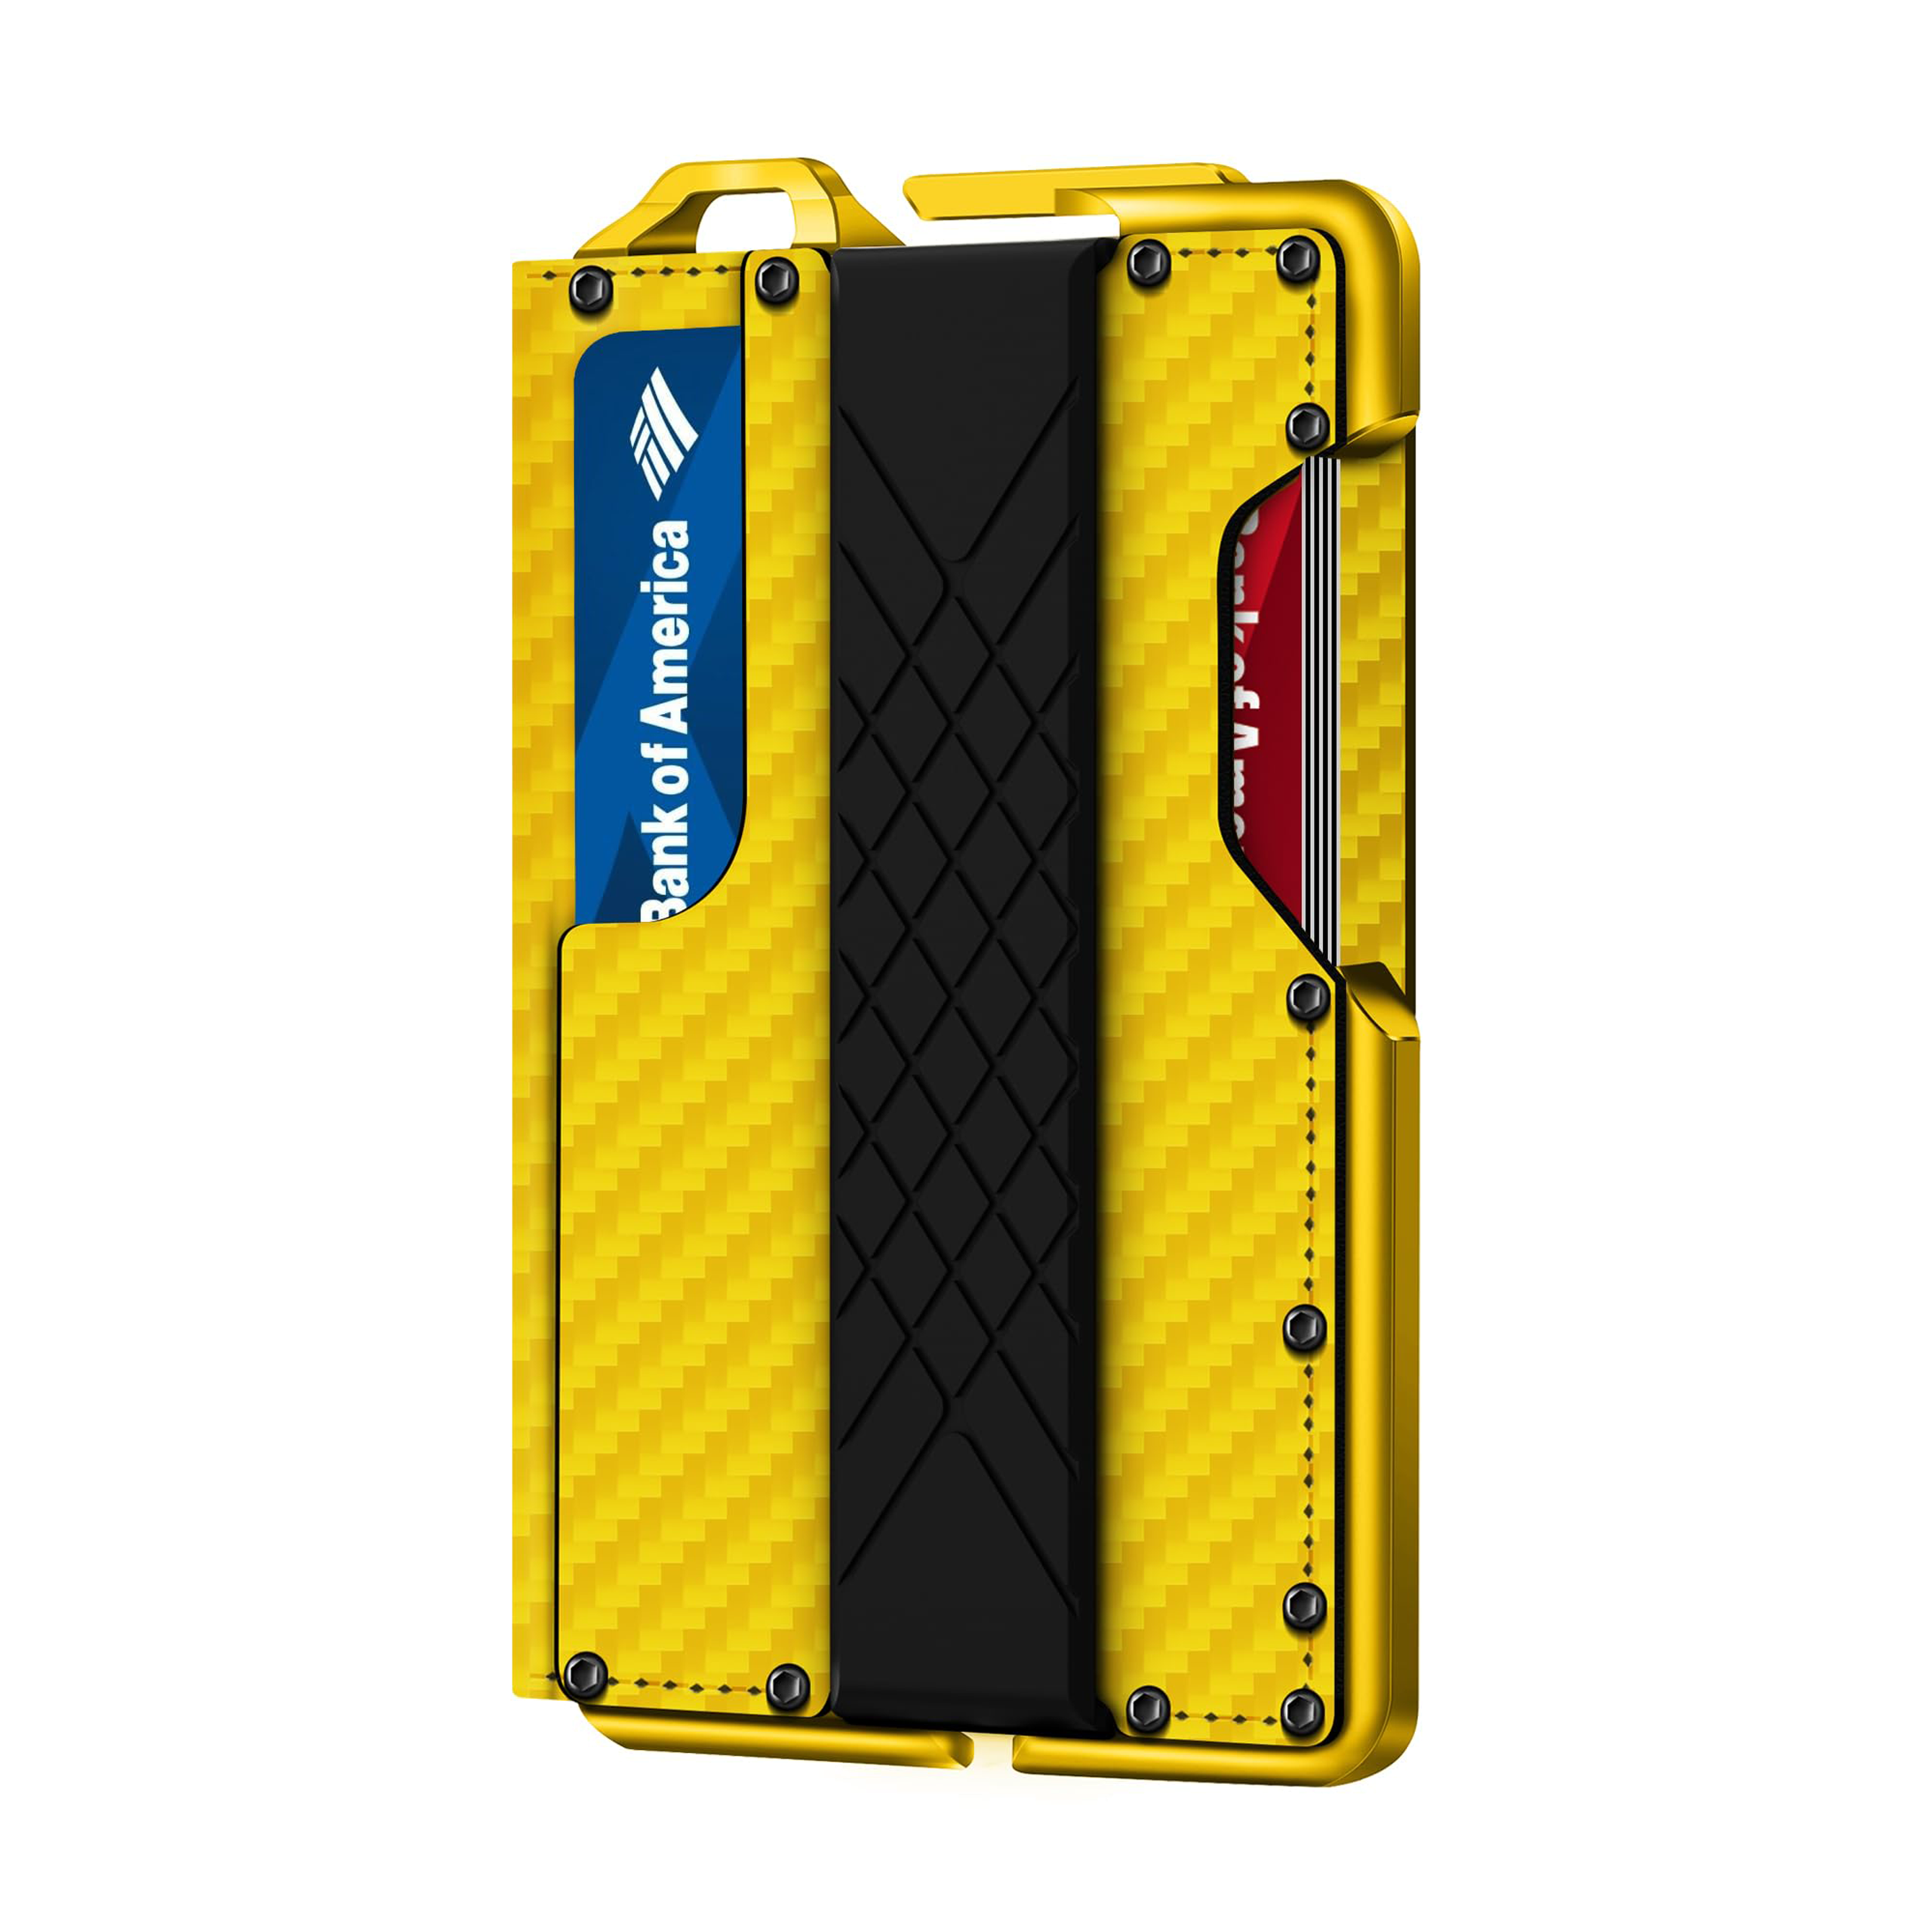 H01 - Dapper Bifold Wallet - Carbon Fiber Yellow Pattern